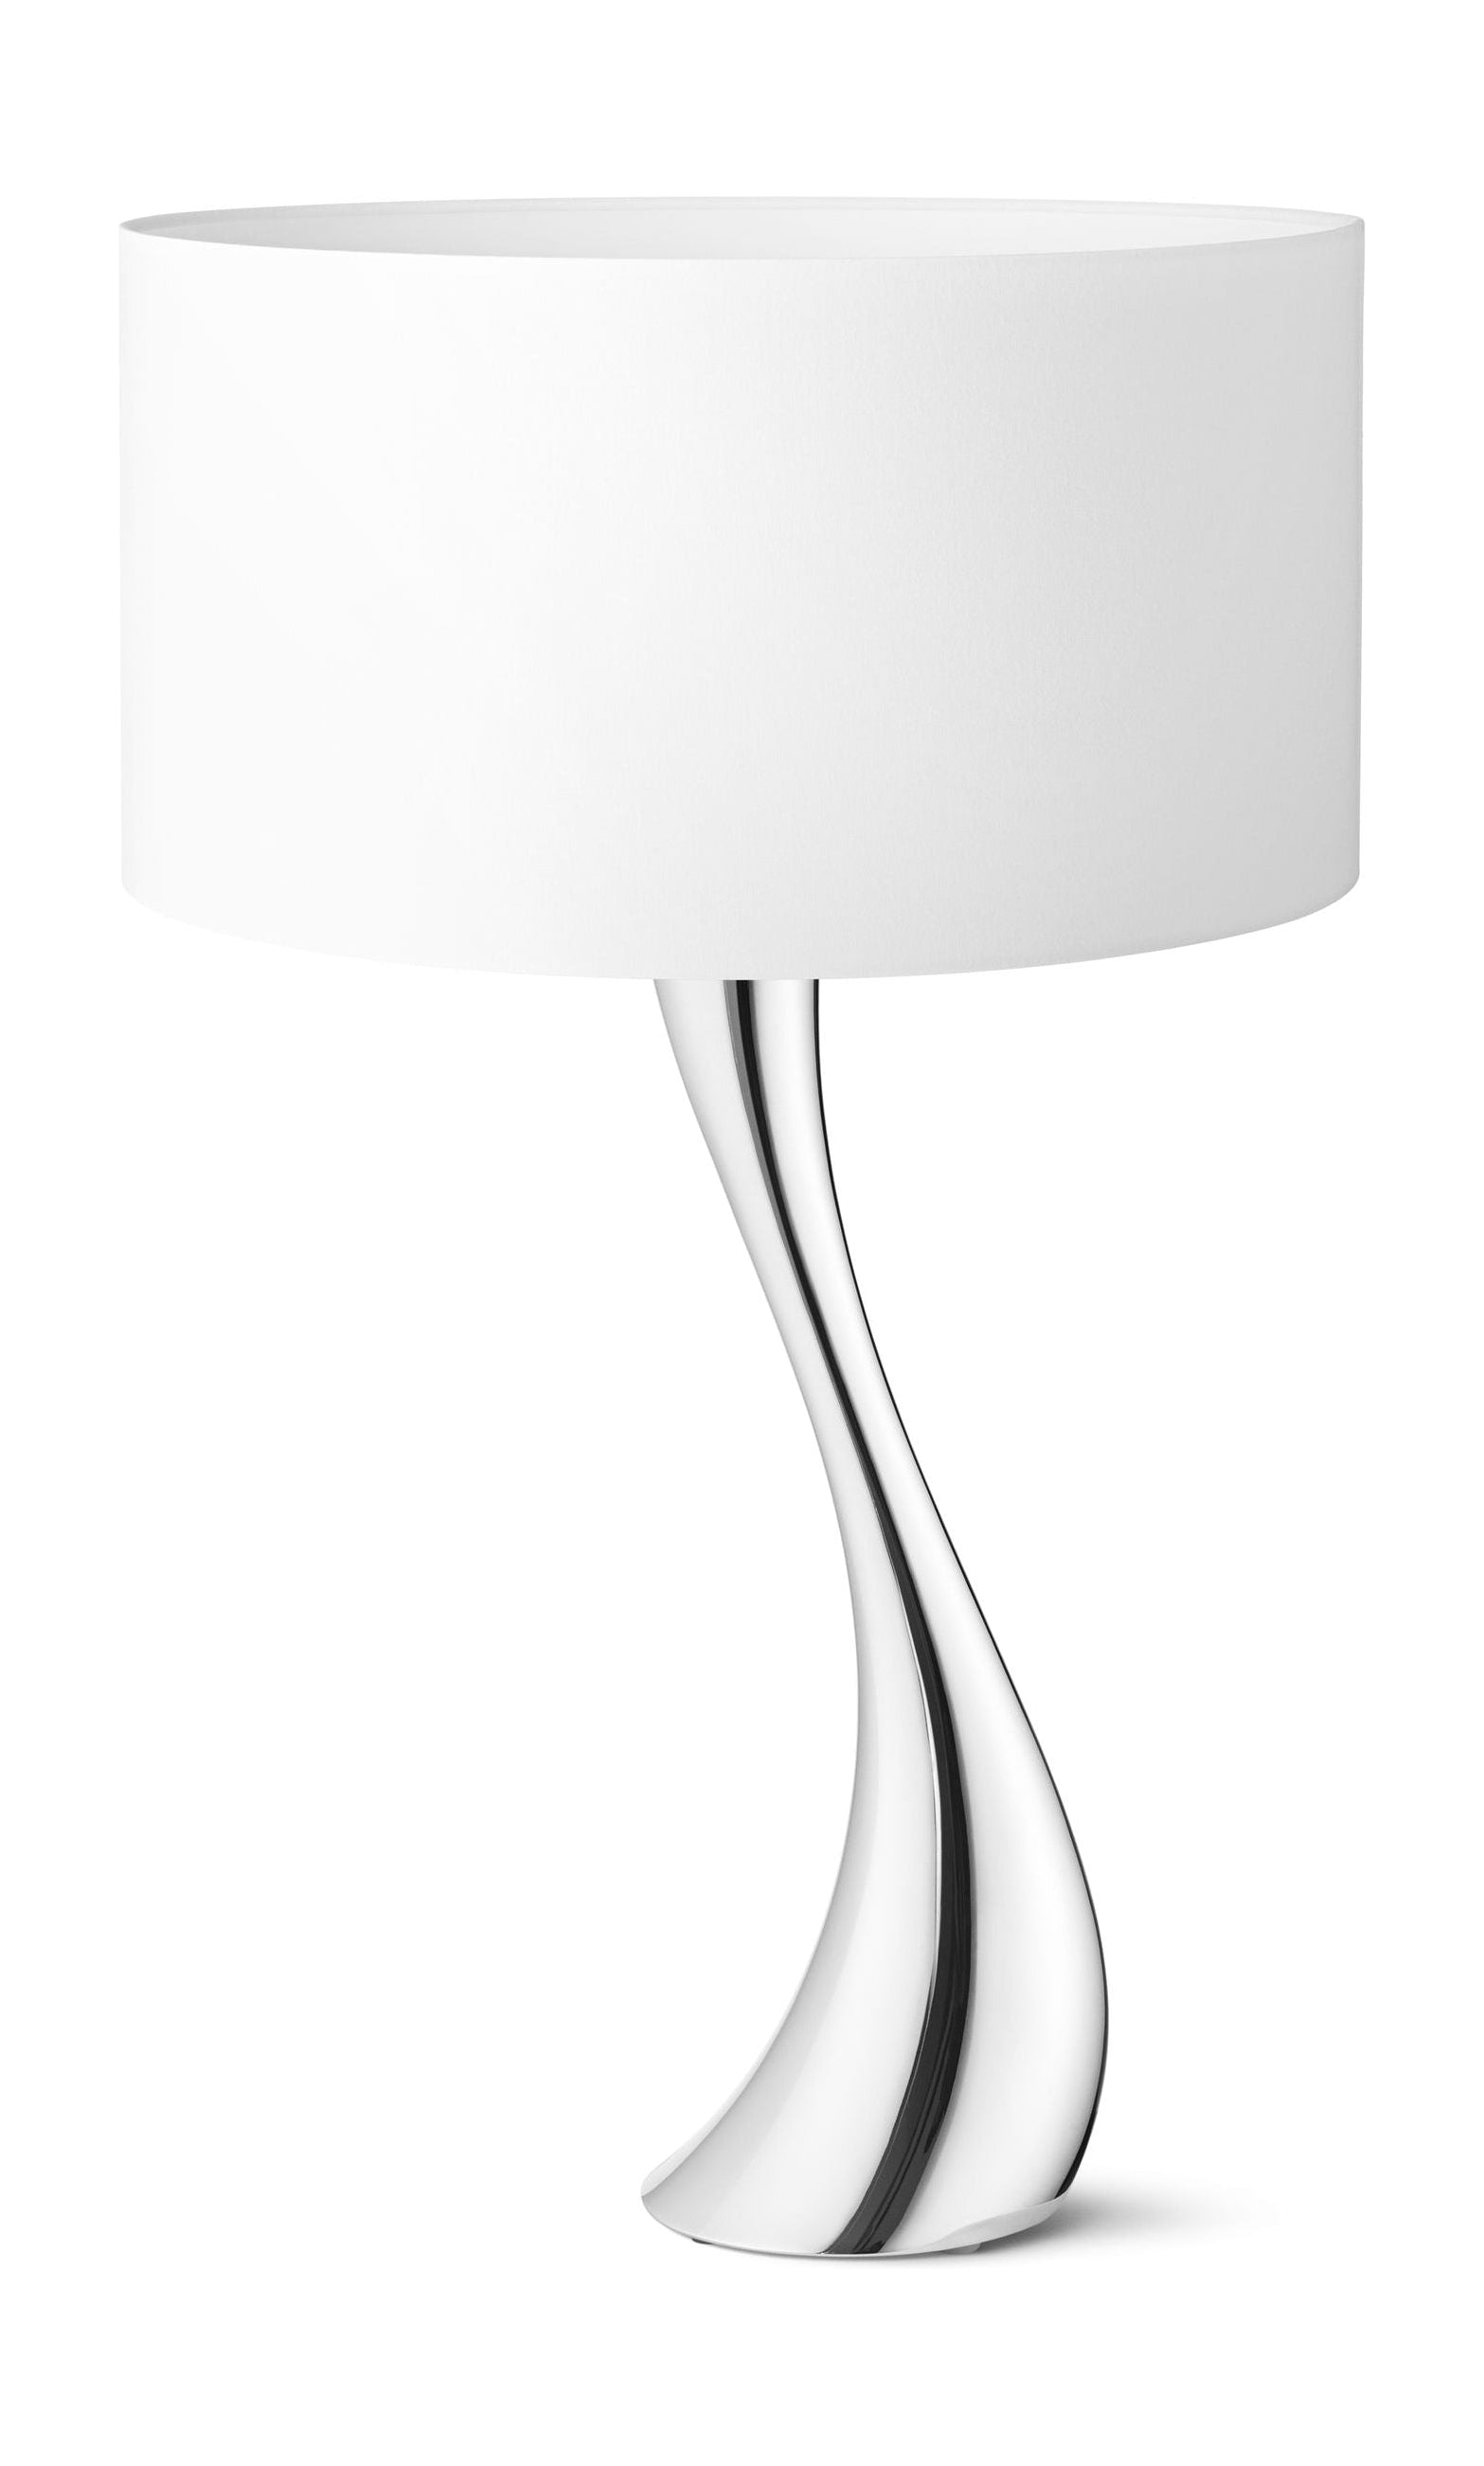 Georg Jensen Cobra -lamppu valkoinen, Ø 42 cm